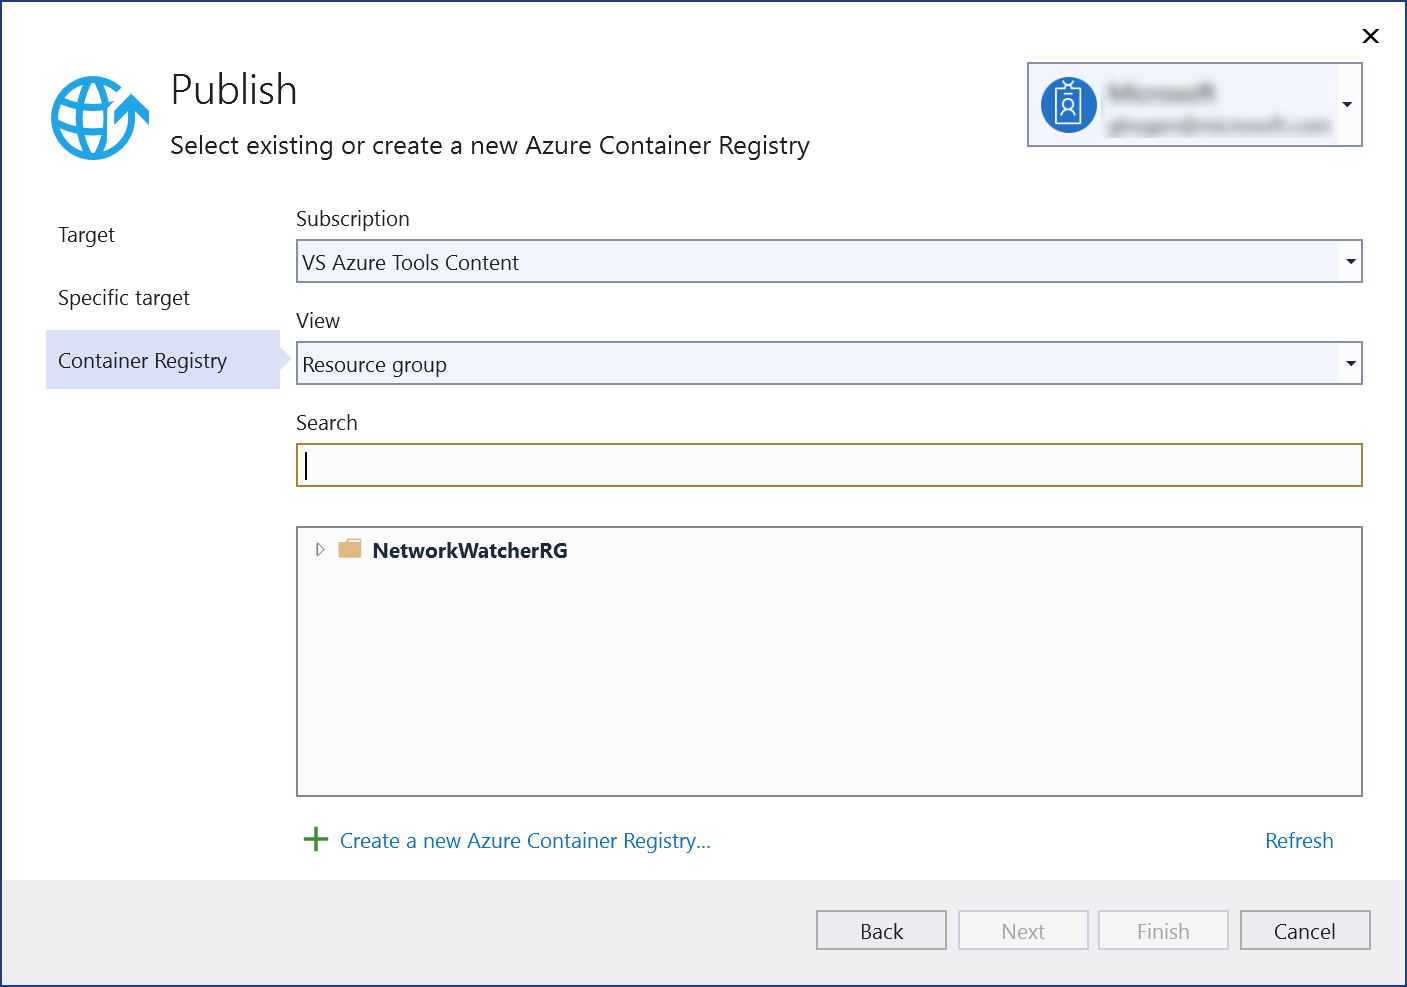 発行ダイアログのスクリーンショット - [新しい Azure Container Registry を作成する] を選択する。